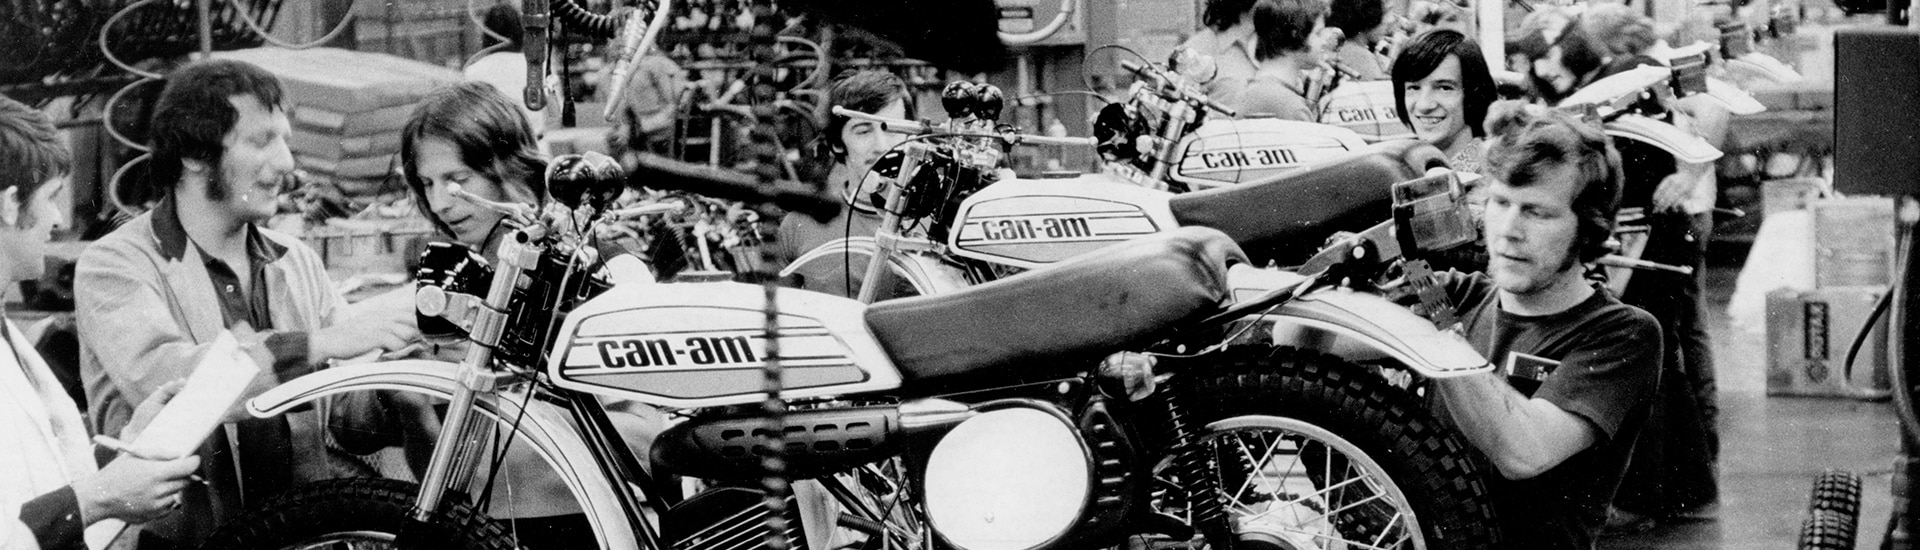 Motocicleta Can-Am sendo inspecionada na pós-produção